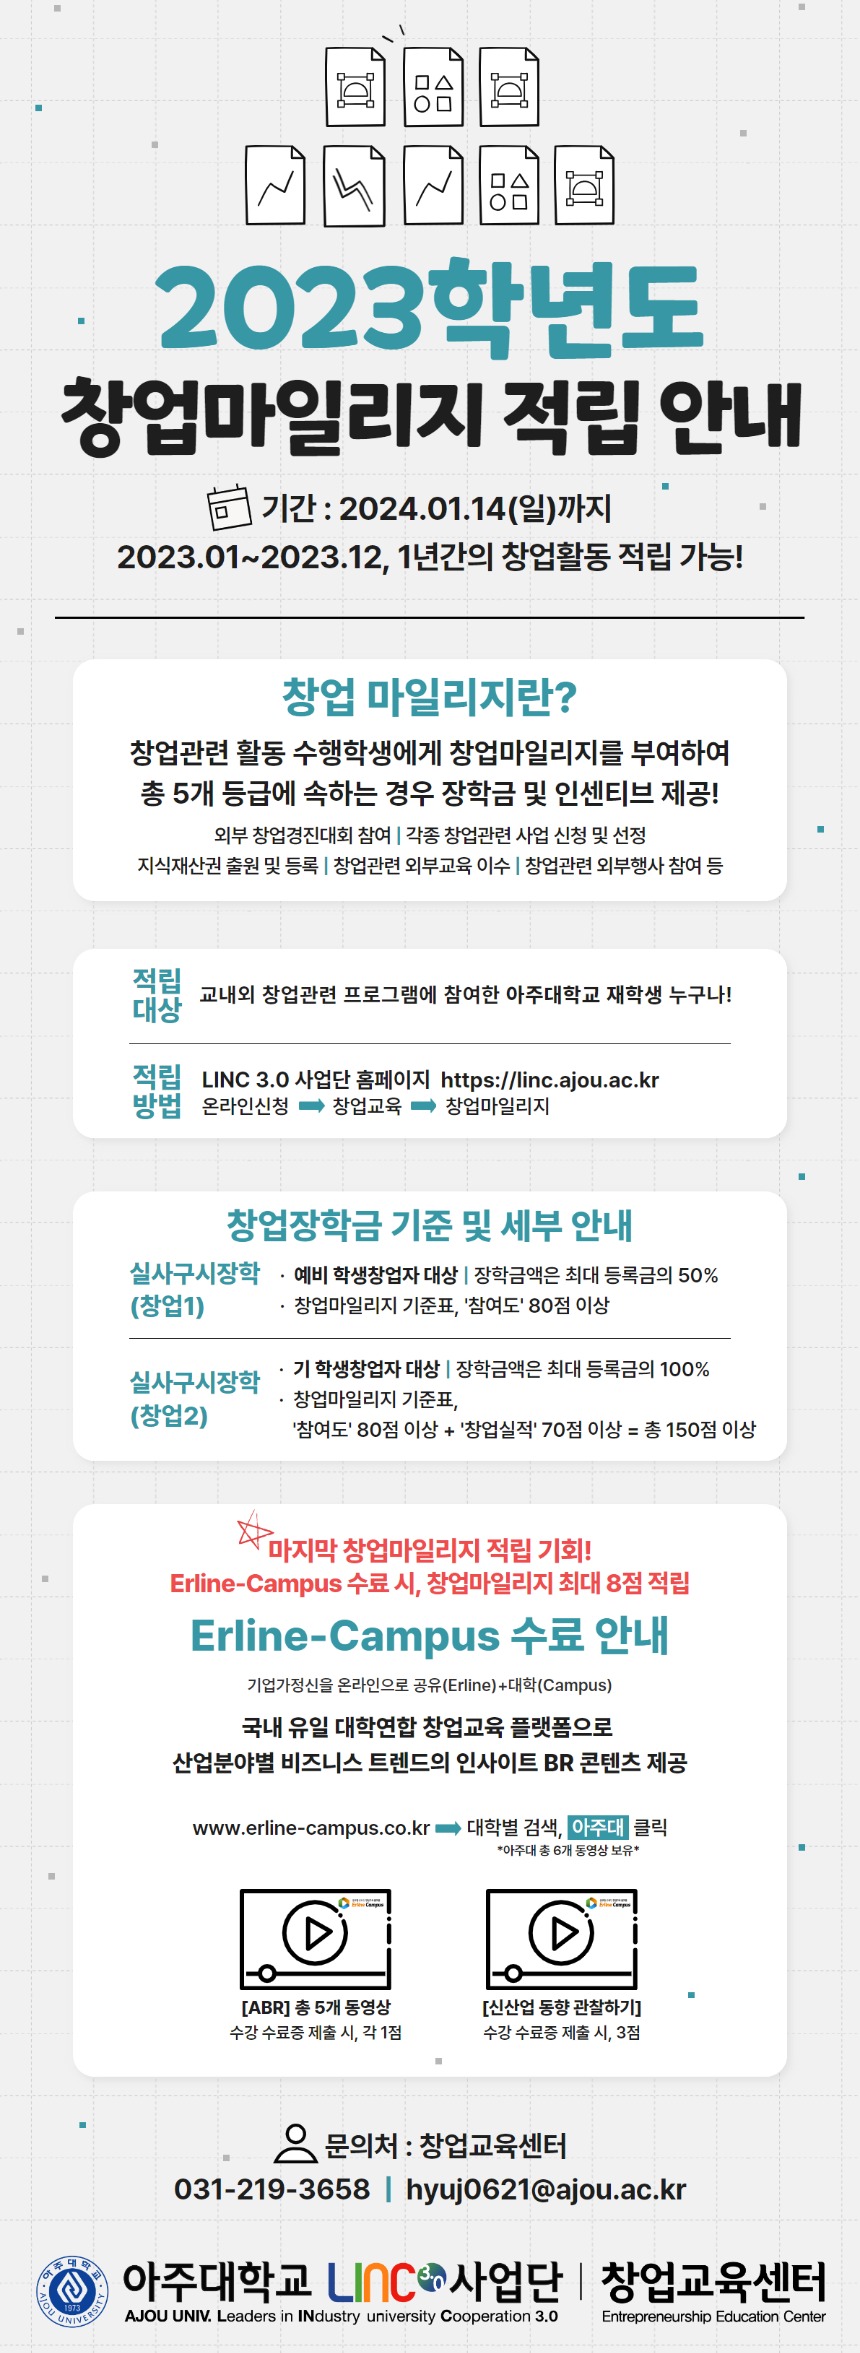 2023-2학기 창업마일리지 & 얼라인캠퍼스 적립 포스터.jpg